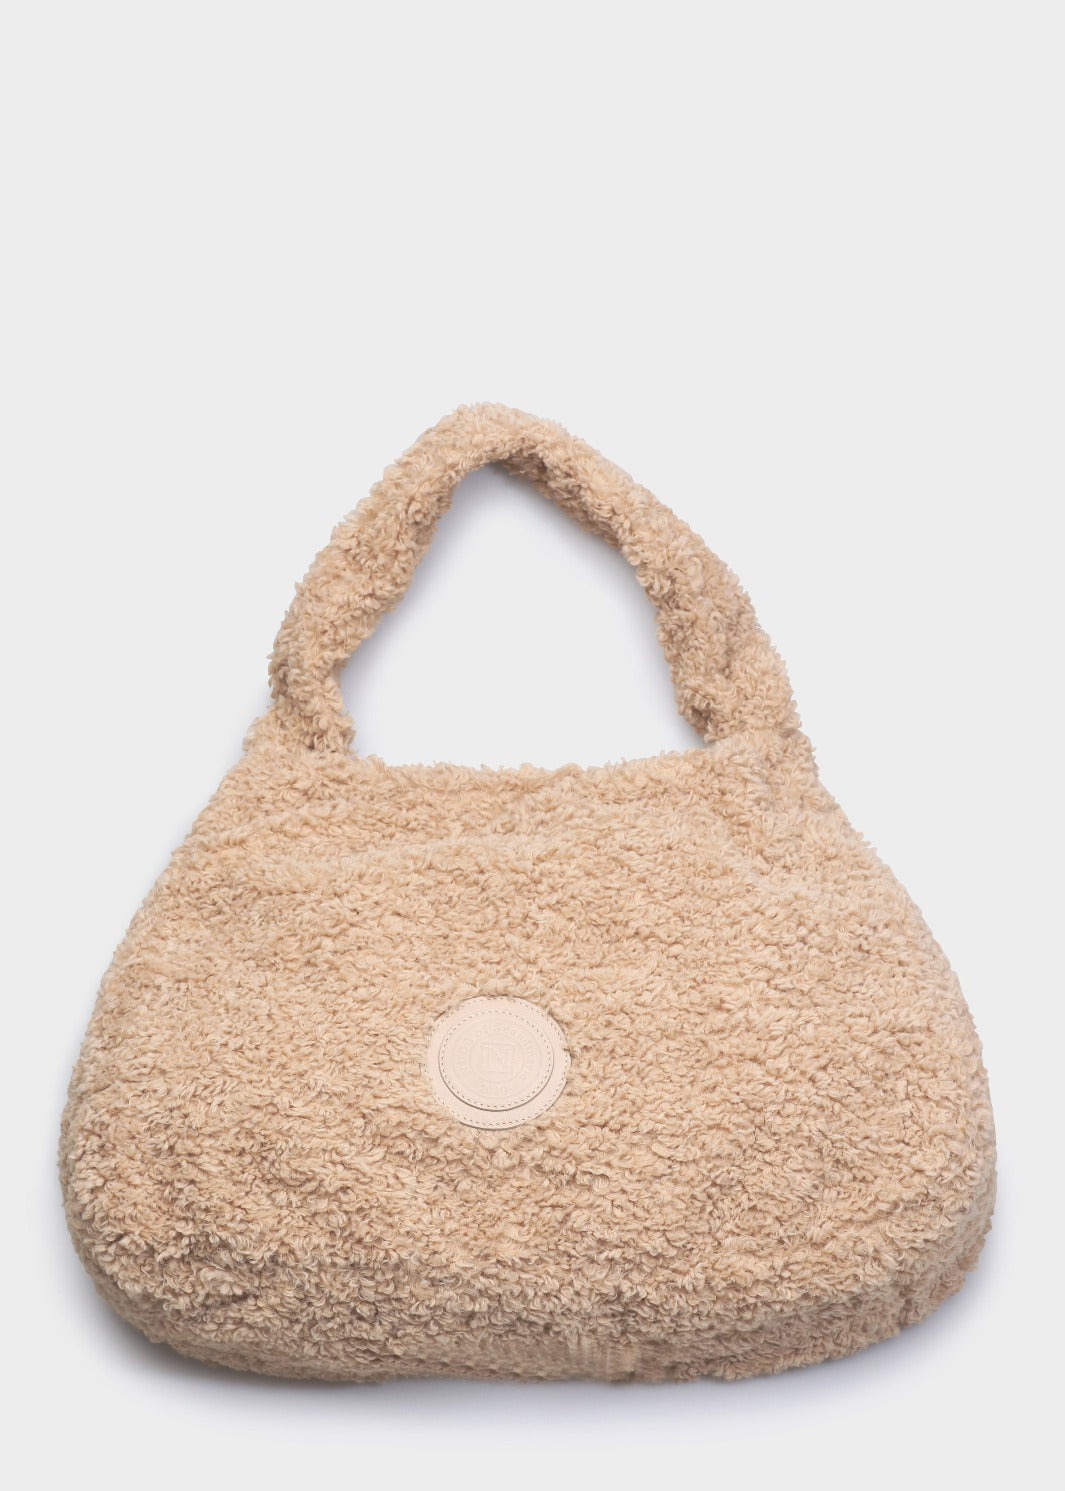 Nude of Scandinavia Bags One Size Nude of Scandinavia Handy Teddy Handbag in Beige